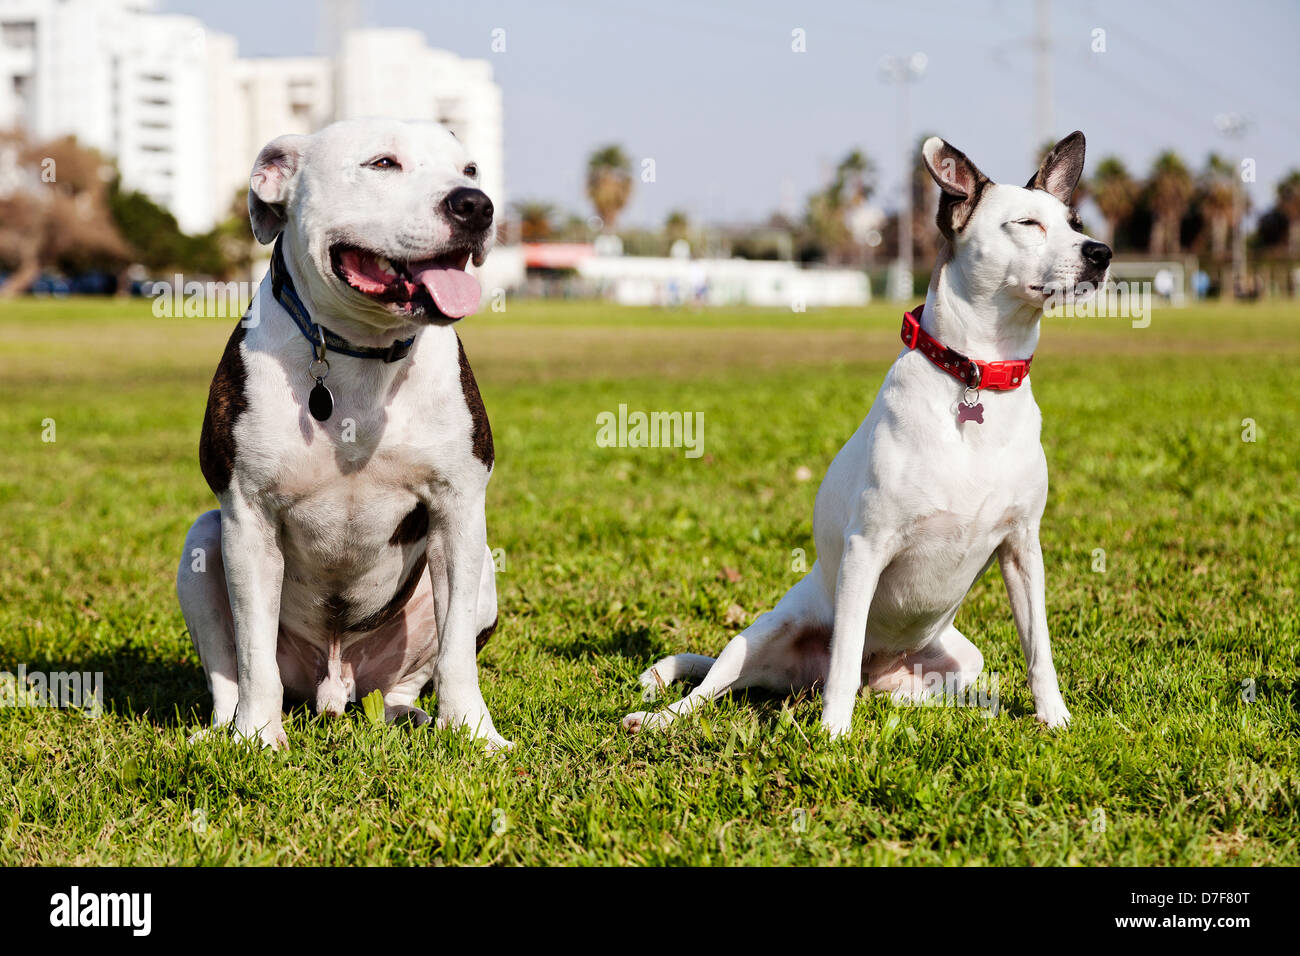 Due cani, un Pitbull sulla sinistra e un misto di Jack Russel sulla destra, seduti insieme sul prato in un parco urbano. Foto Stock